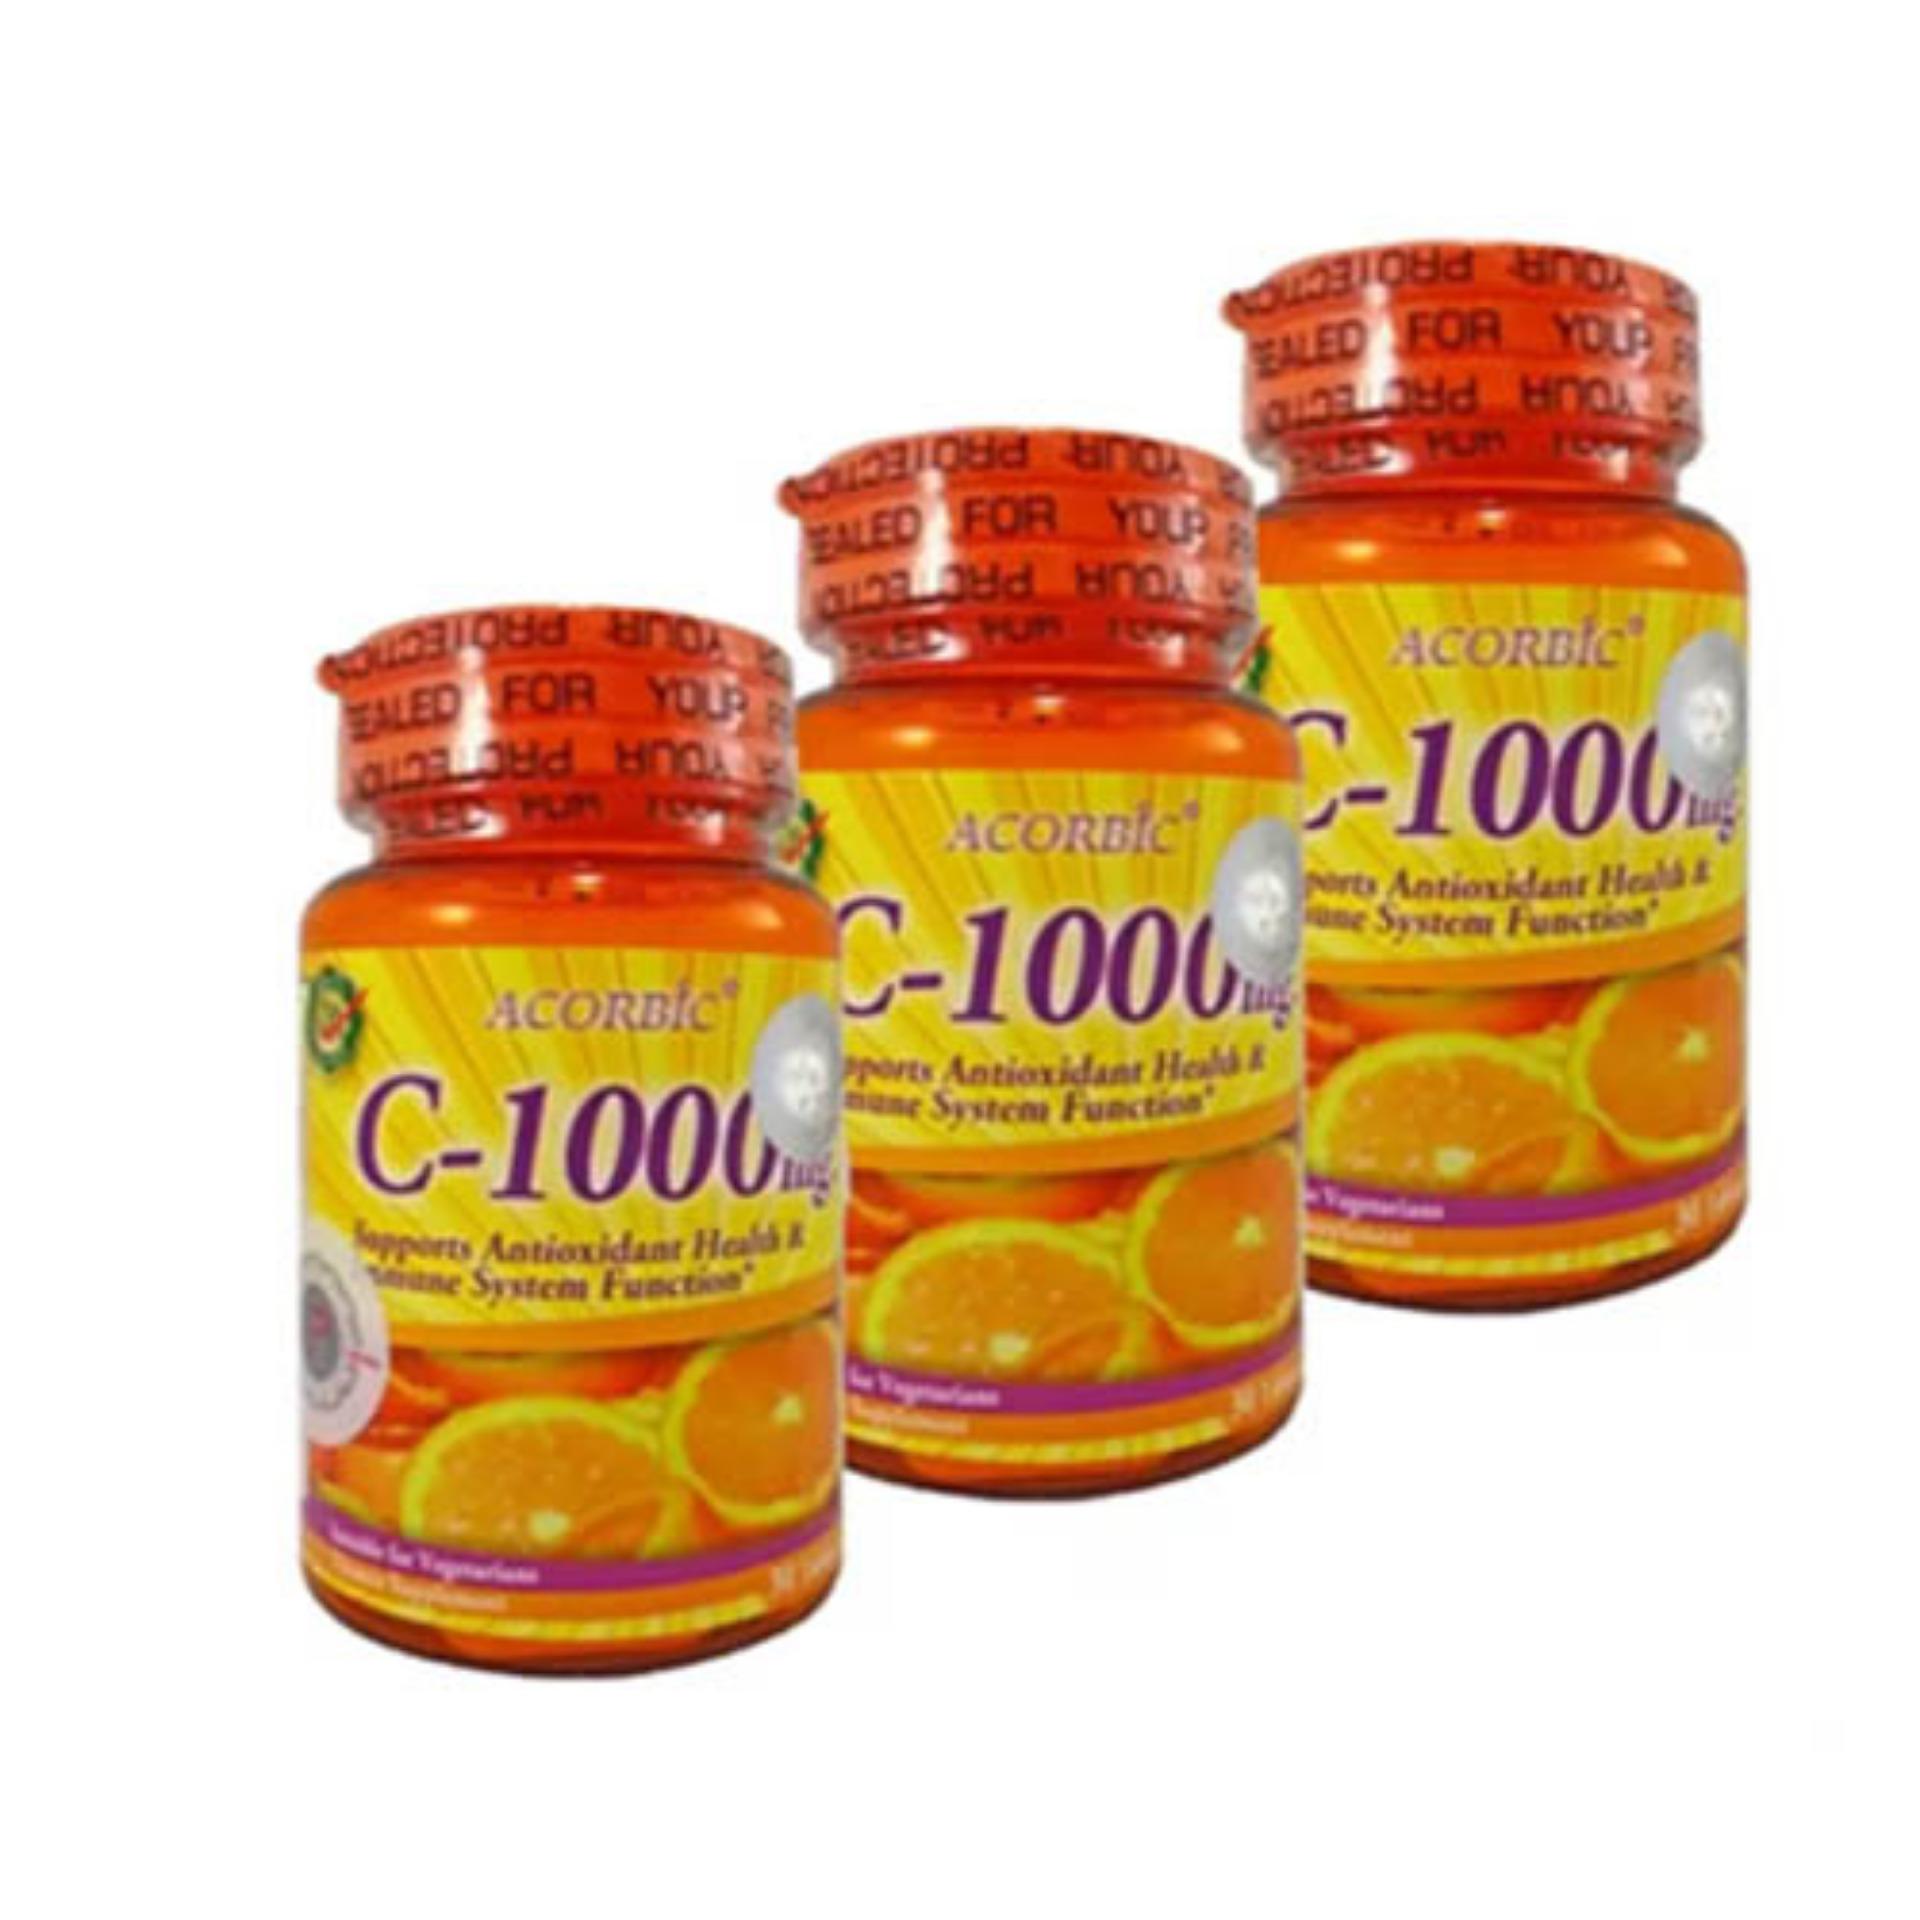 ร ว ว Acorbic Vitamin C 1000mg ผล ตภ ณฑ เสร มอาหาร ว ตาม น ซ 1000 มก 3 กระป ก 30 เม ด 1กระป ก Linda Health Store